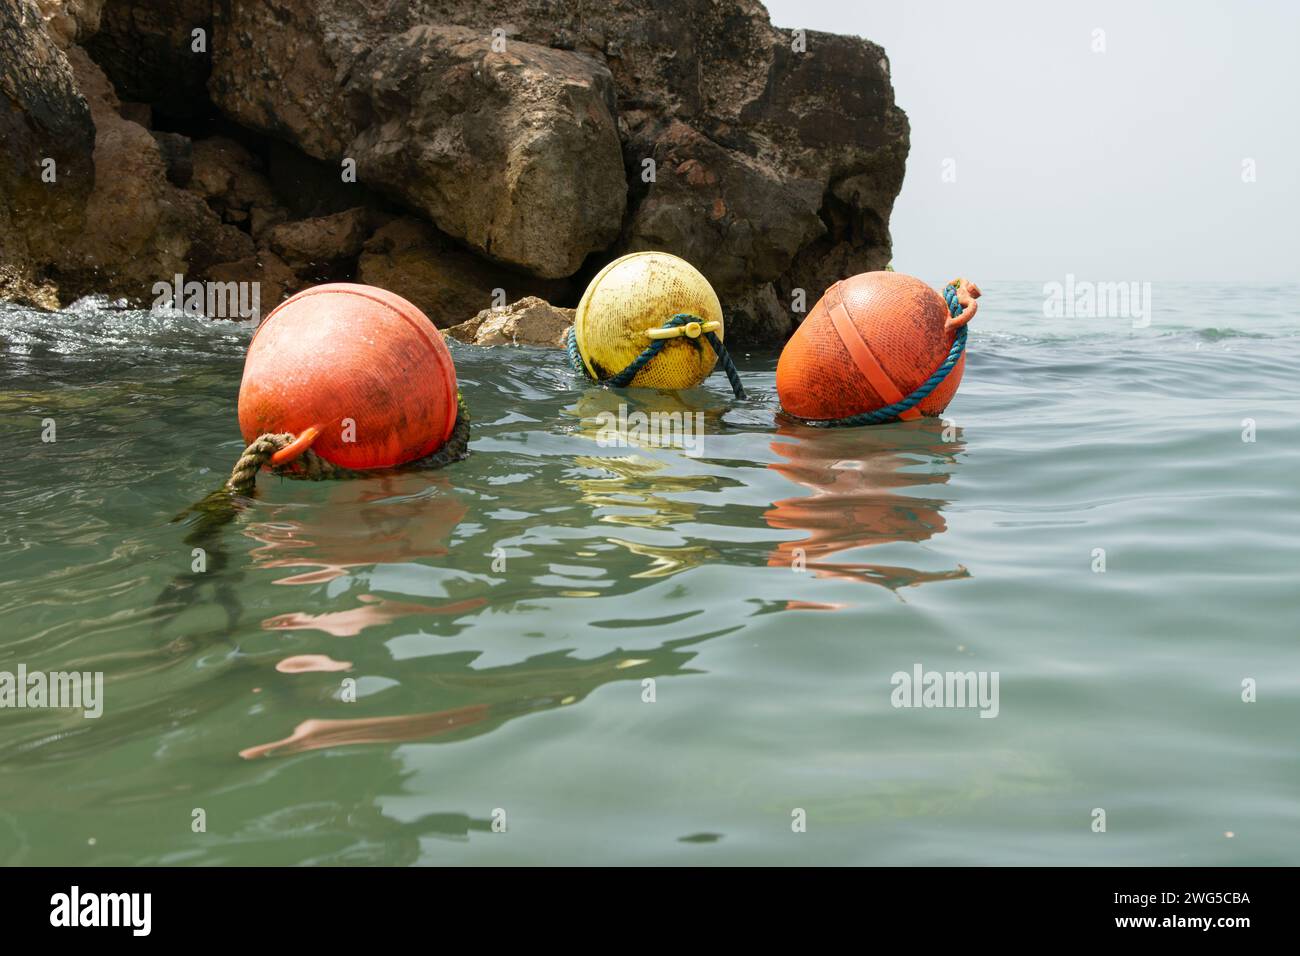 Floating buoys Stock Photo